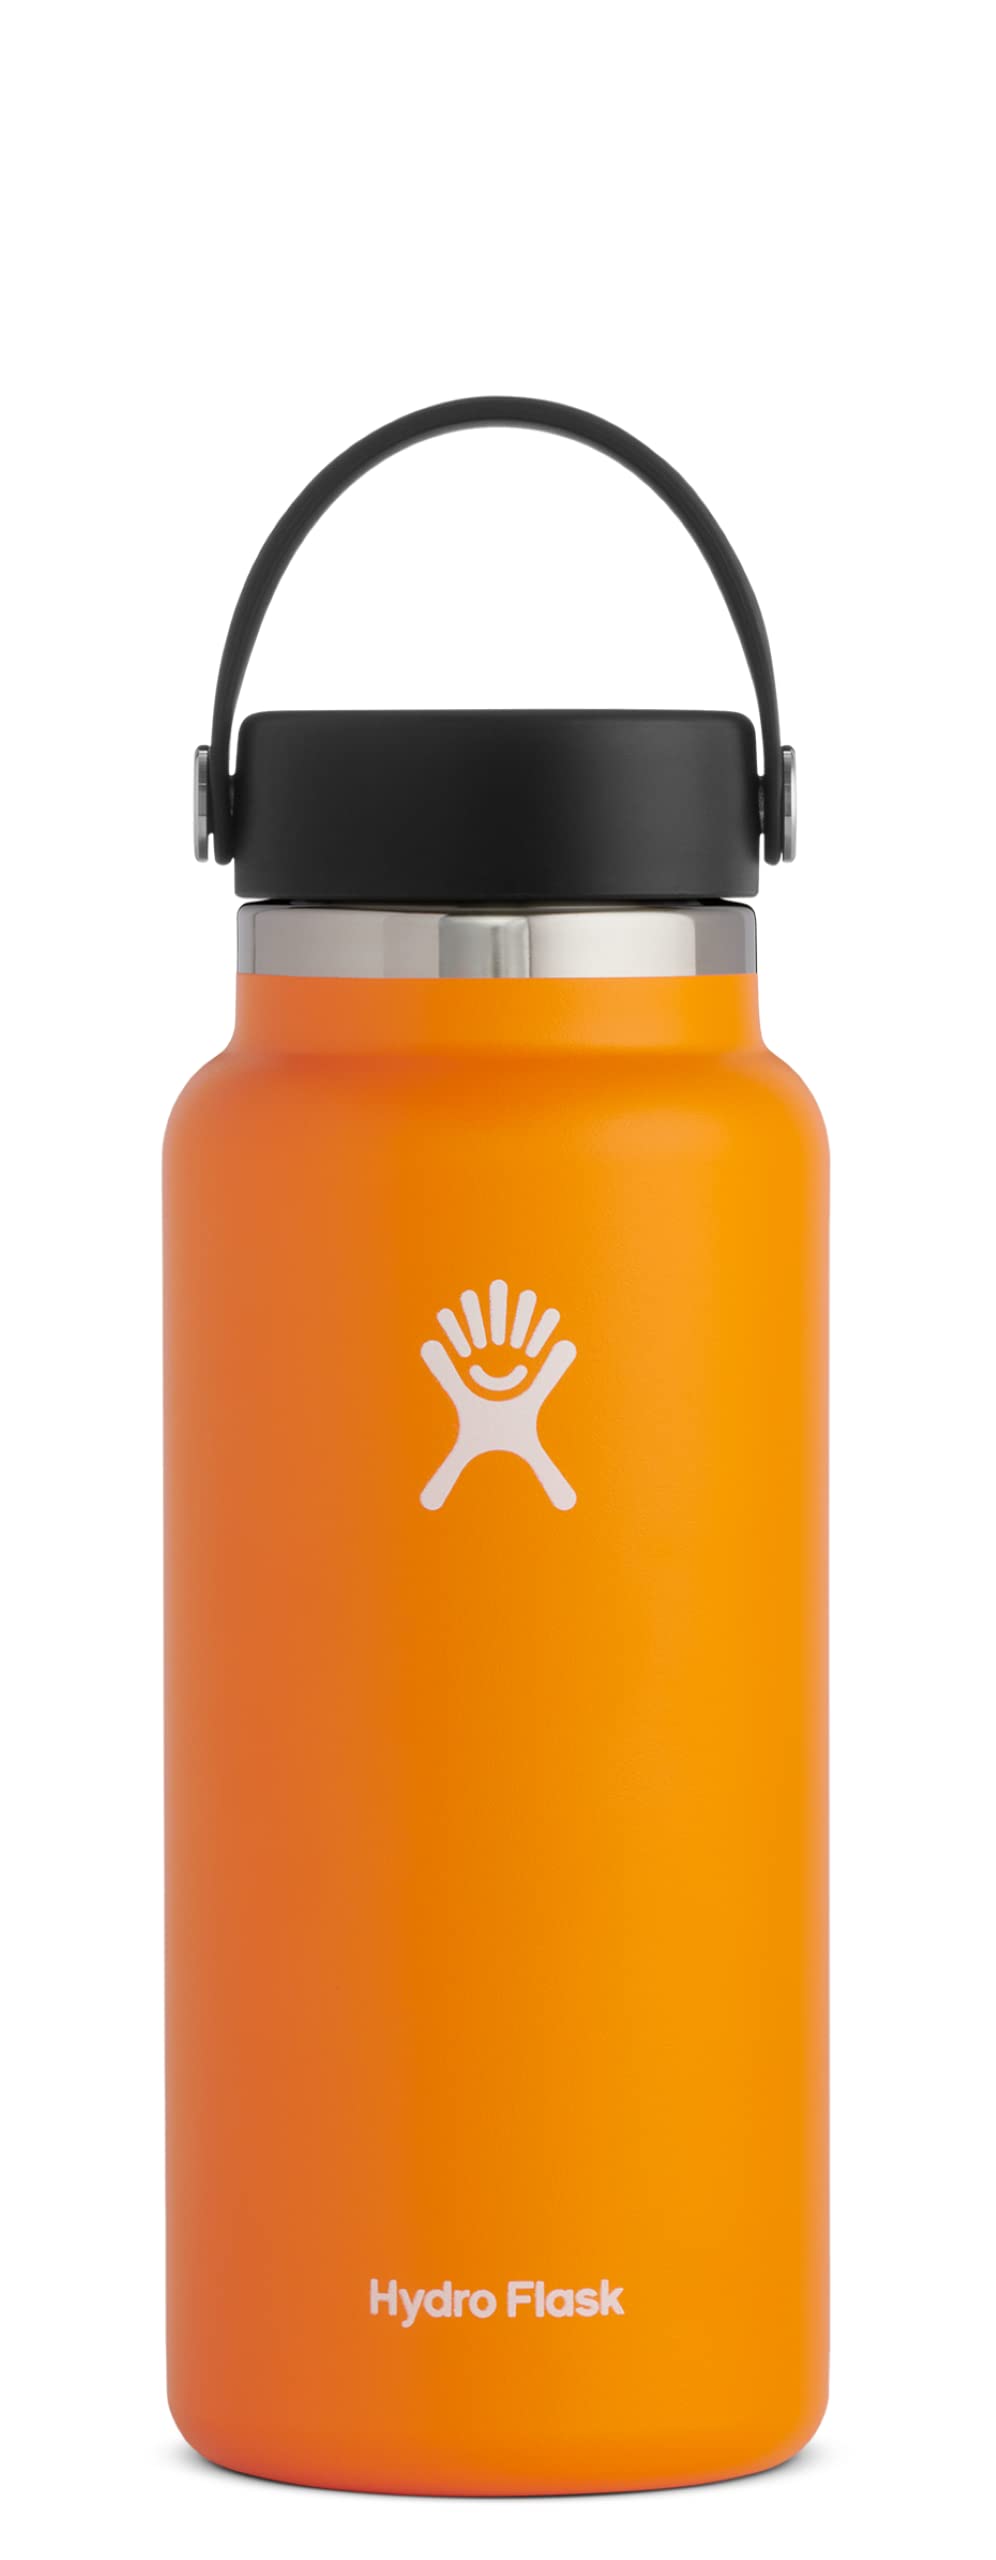 Hydro Flask फ्लेक्स कैप के साथ चौड़े मुंह वाली बोतल